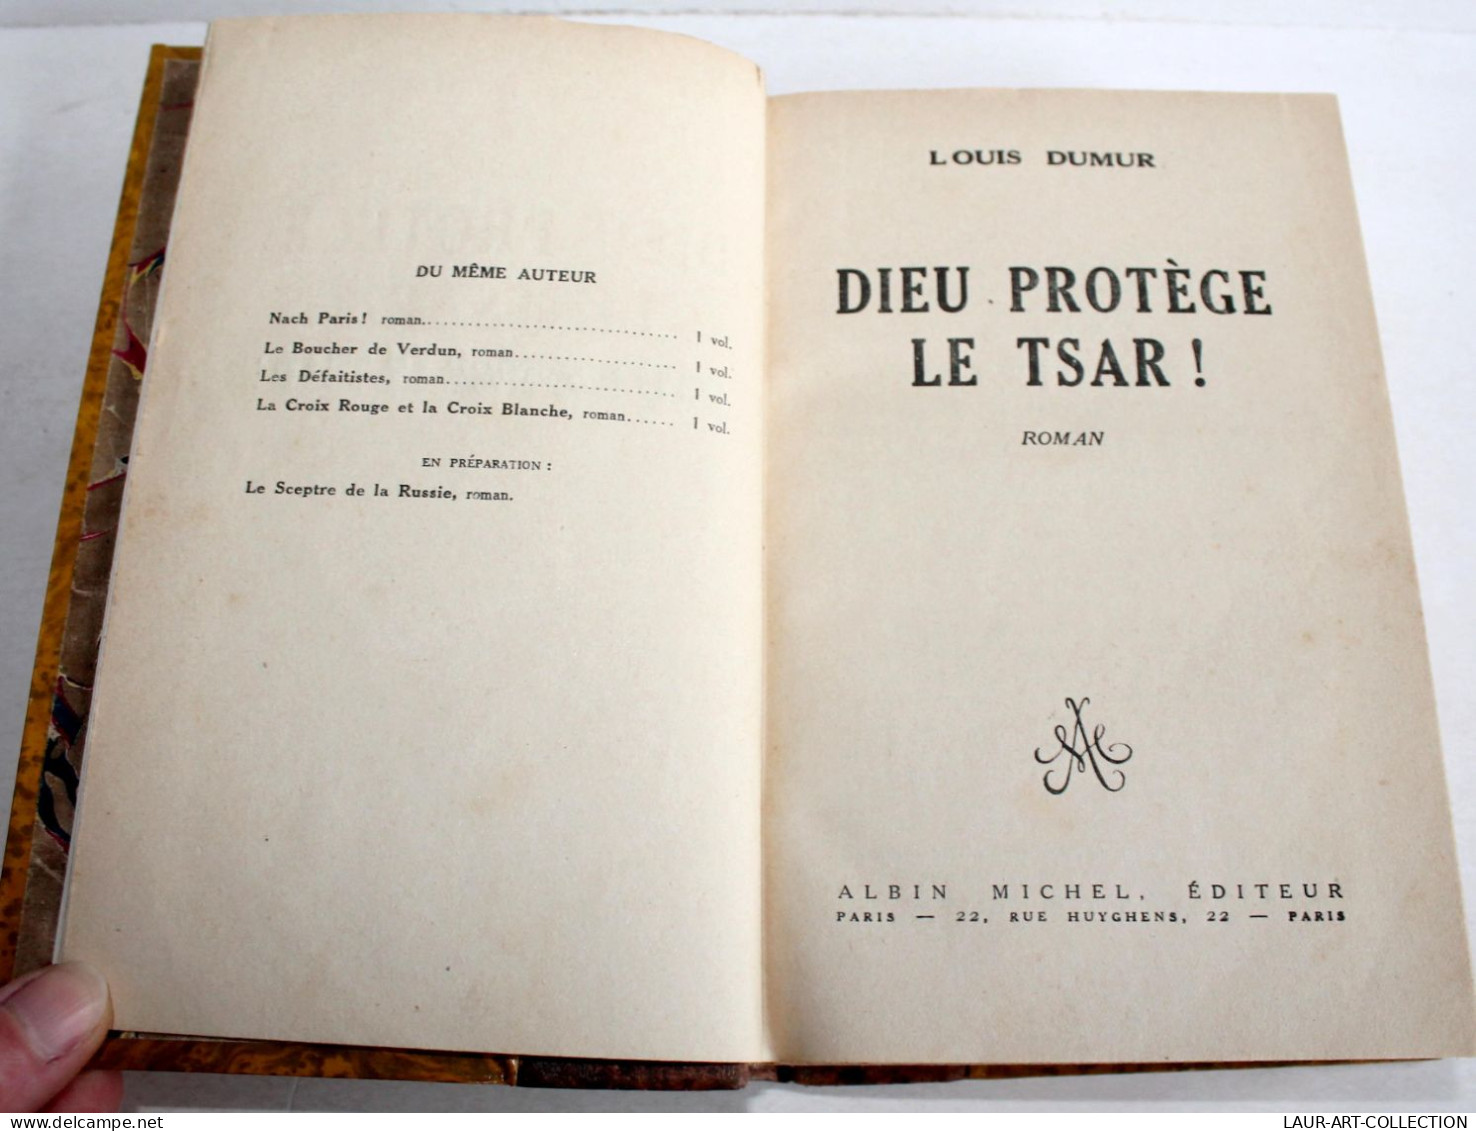 DIEU PROTEGE LE TSAR ! ROMAN De LOUIS DUMUR 1927 ALBIN MICHEL EDITEUR / LIVRE ANCIEN XXe SIECLE (2204.135) - 1901-1940